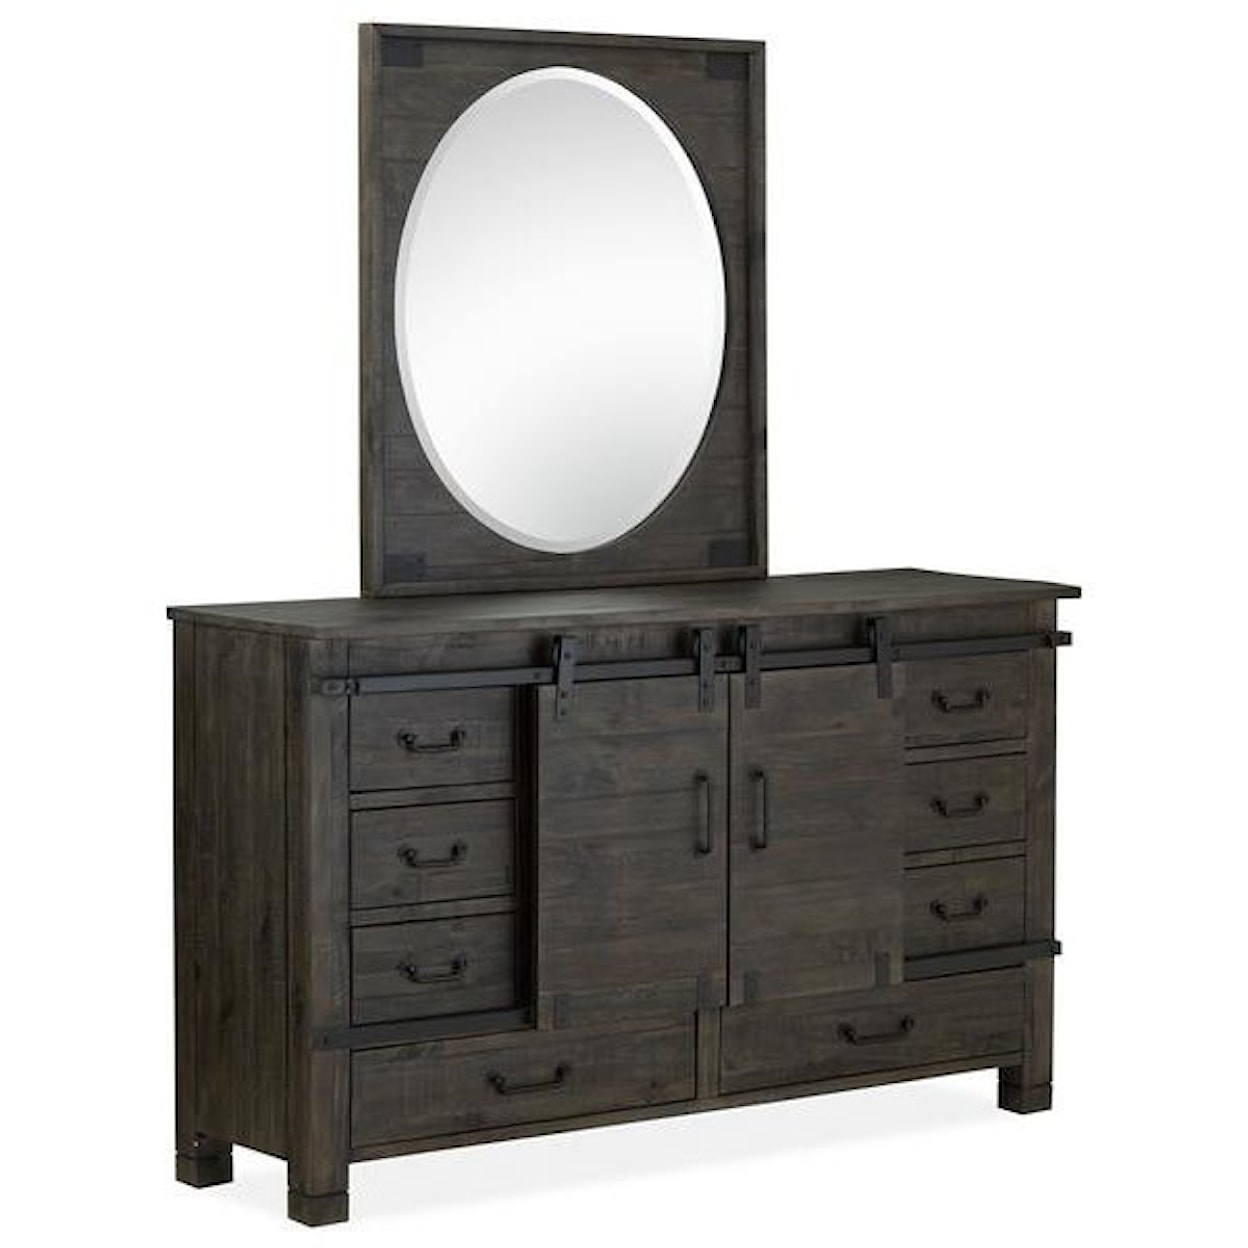 Magnussen Home Abington Bedroom Dresser and Mirror Set